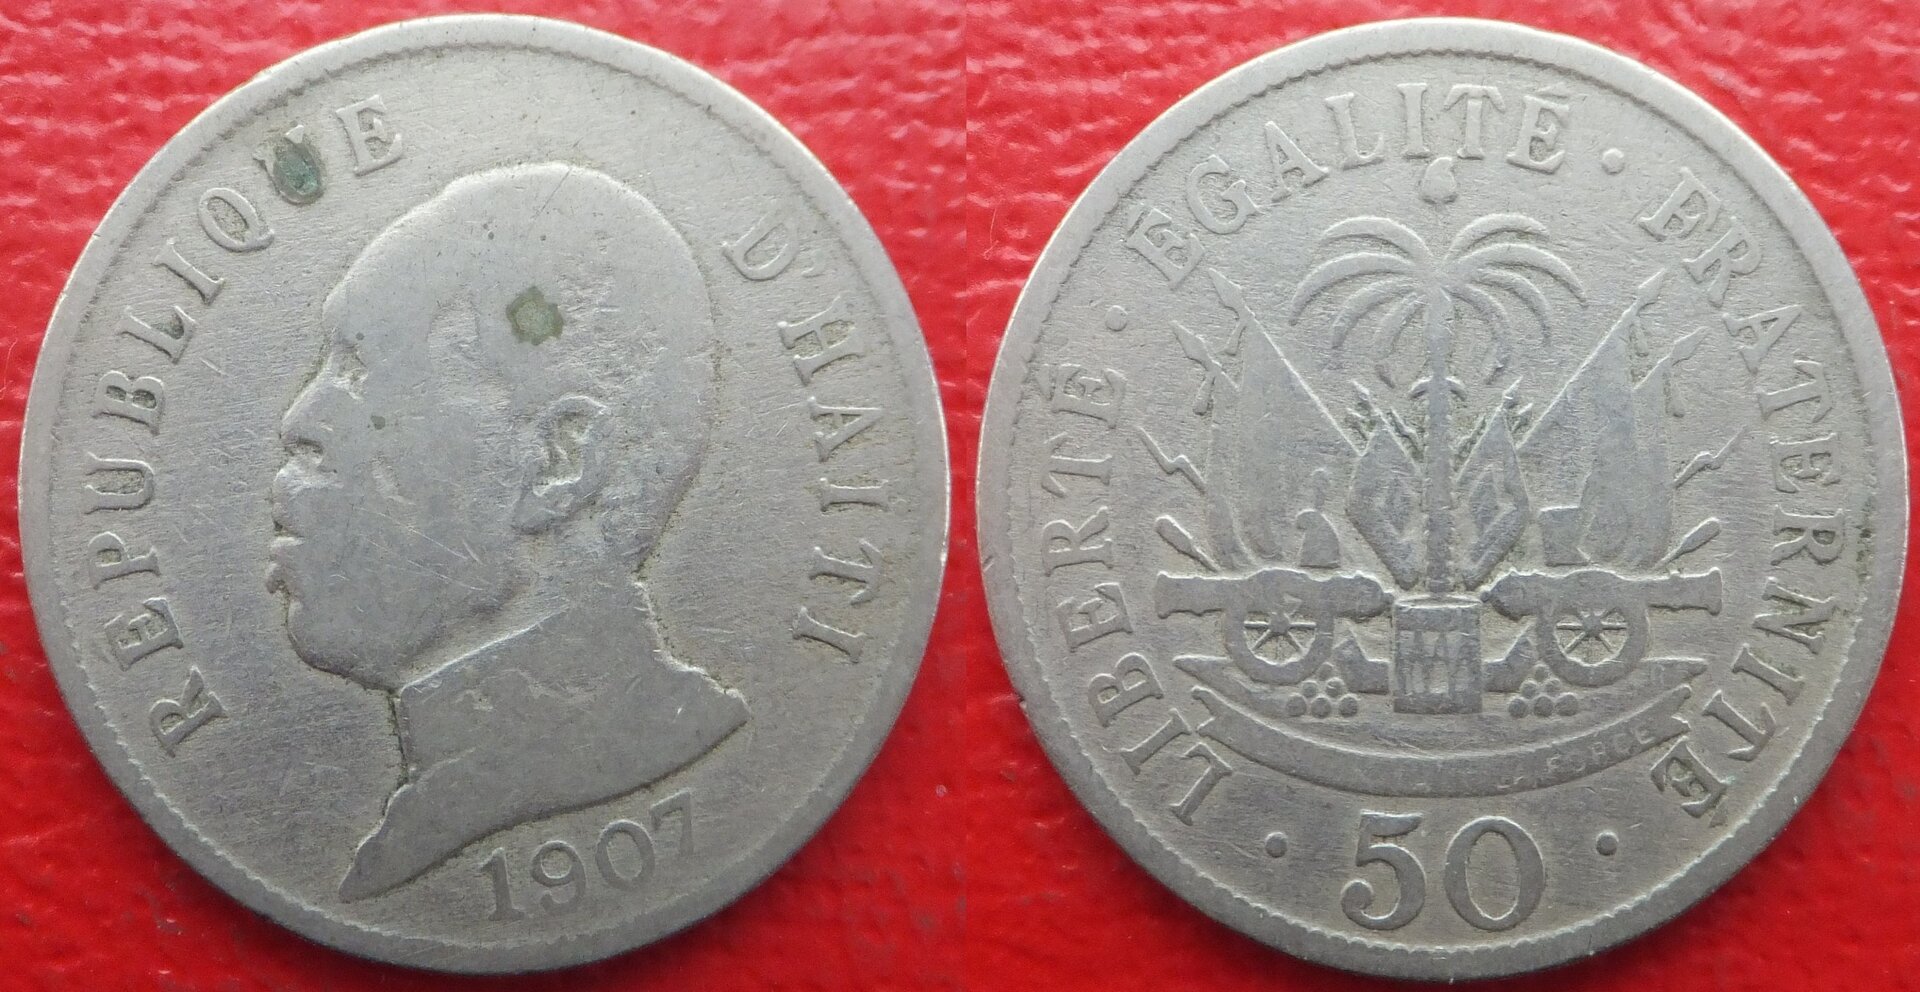 Haiti 50 centimes 1907 (3).jpg